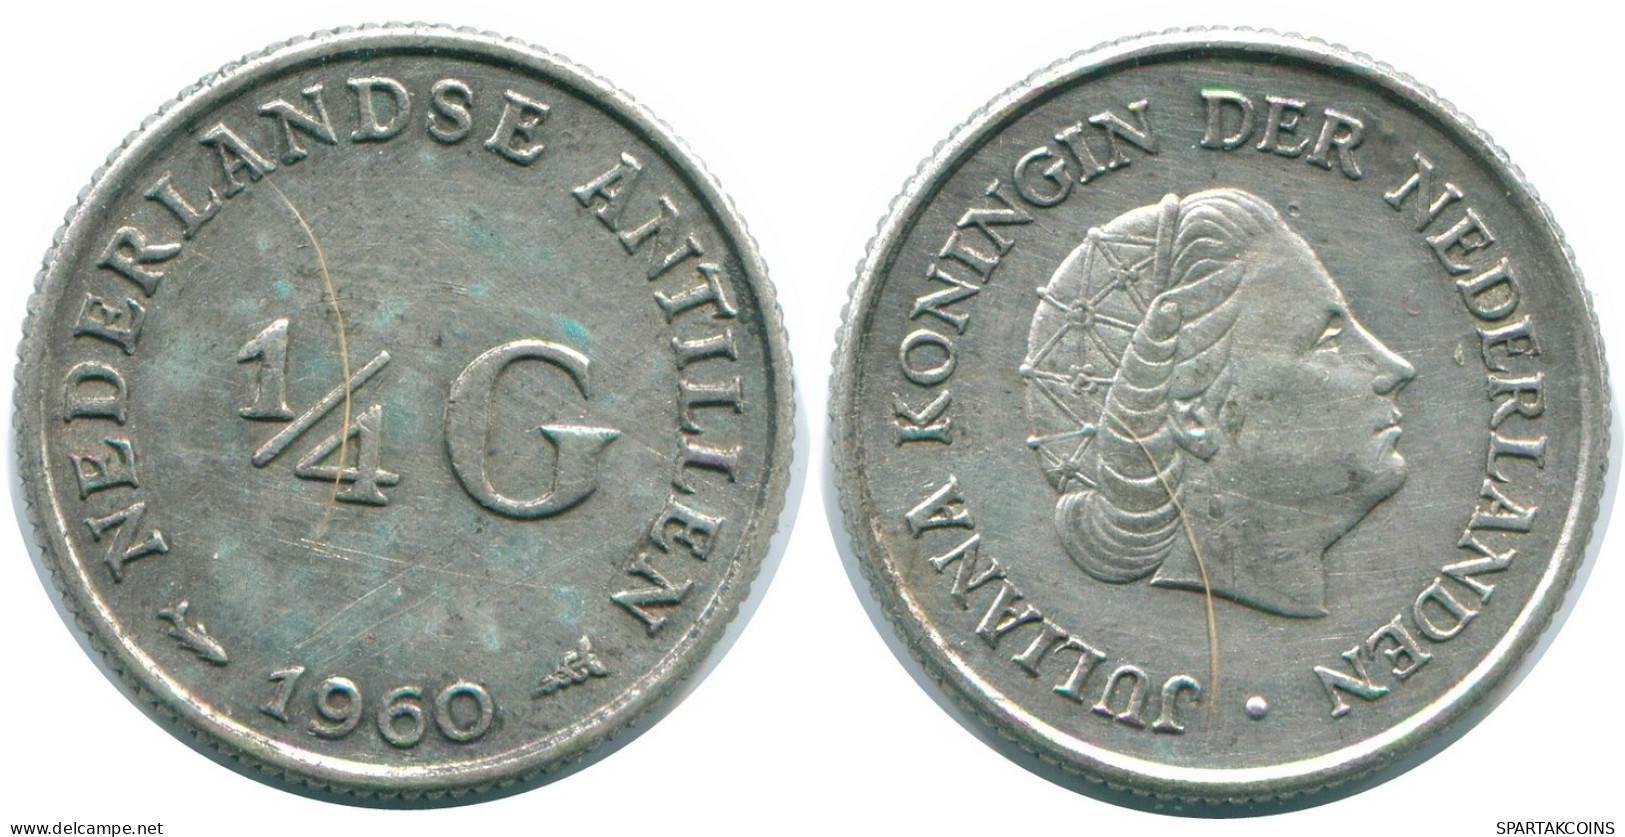 1/4 GULDEN 1960 NIEDERLÄNDISCHE ANTILLEN SILBER Koloniale Münze #NL11024.4.D.A - Niederländische Antillen